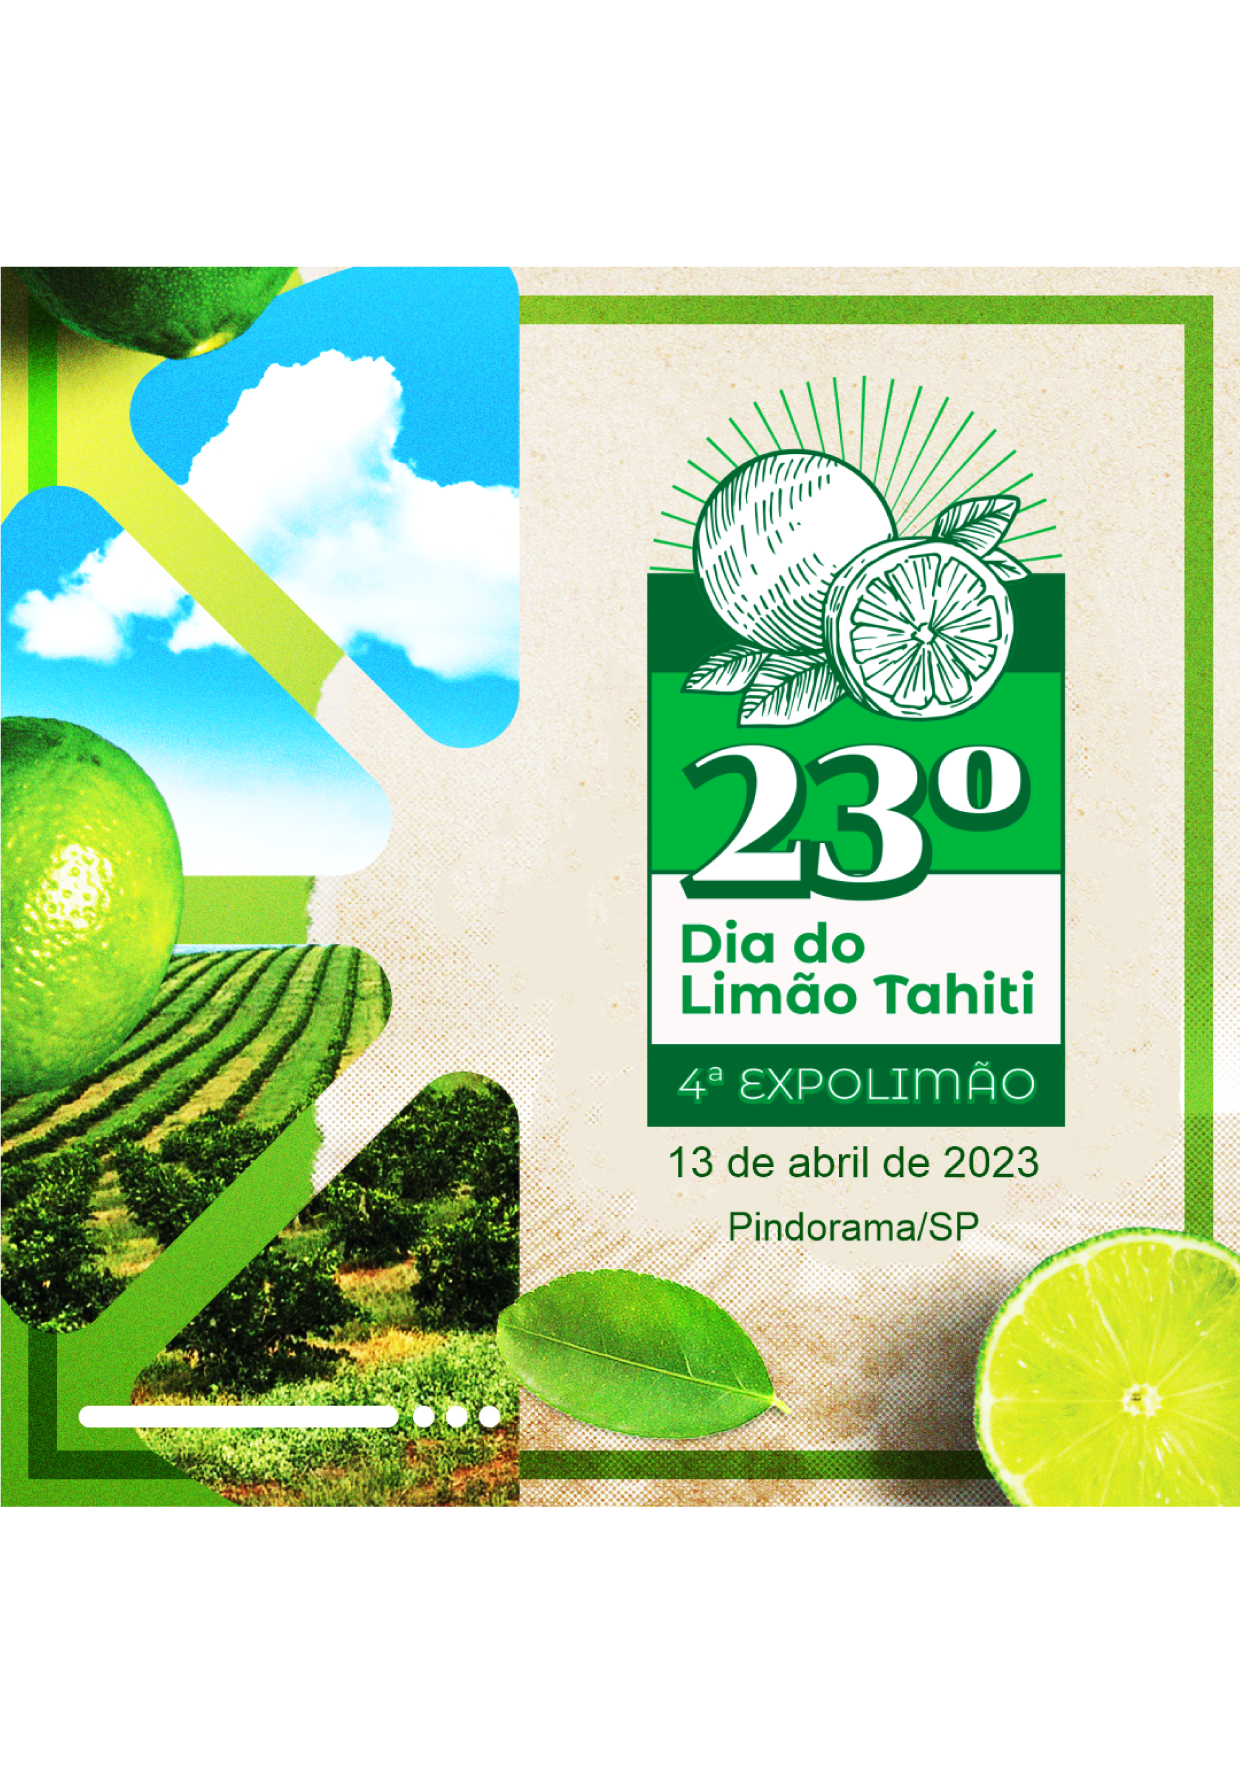 23º Dia do Limão Tahiti | 4ª Expolimão